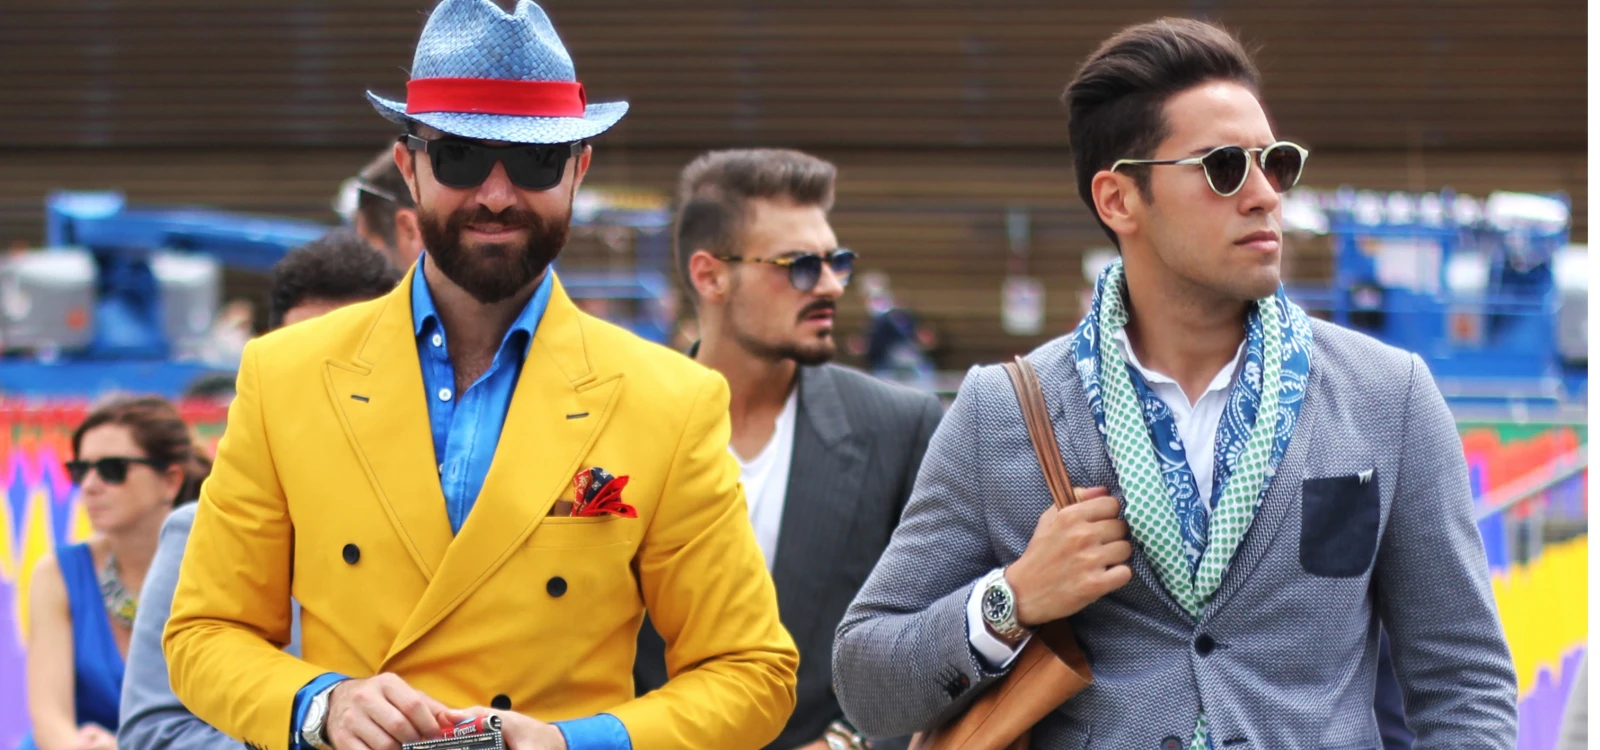 Gentlemen's Fashion 